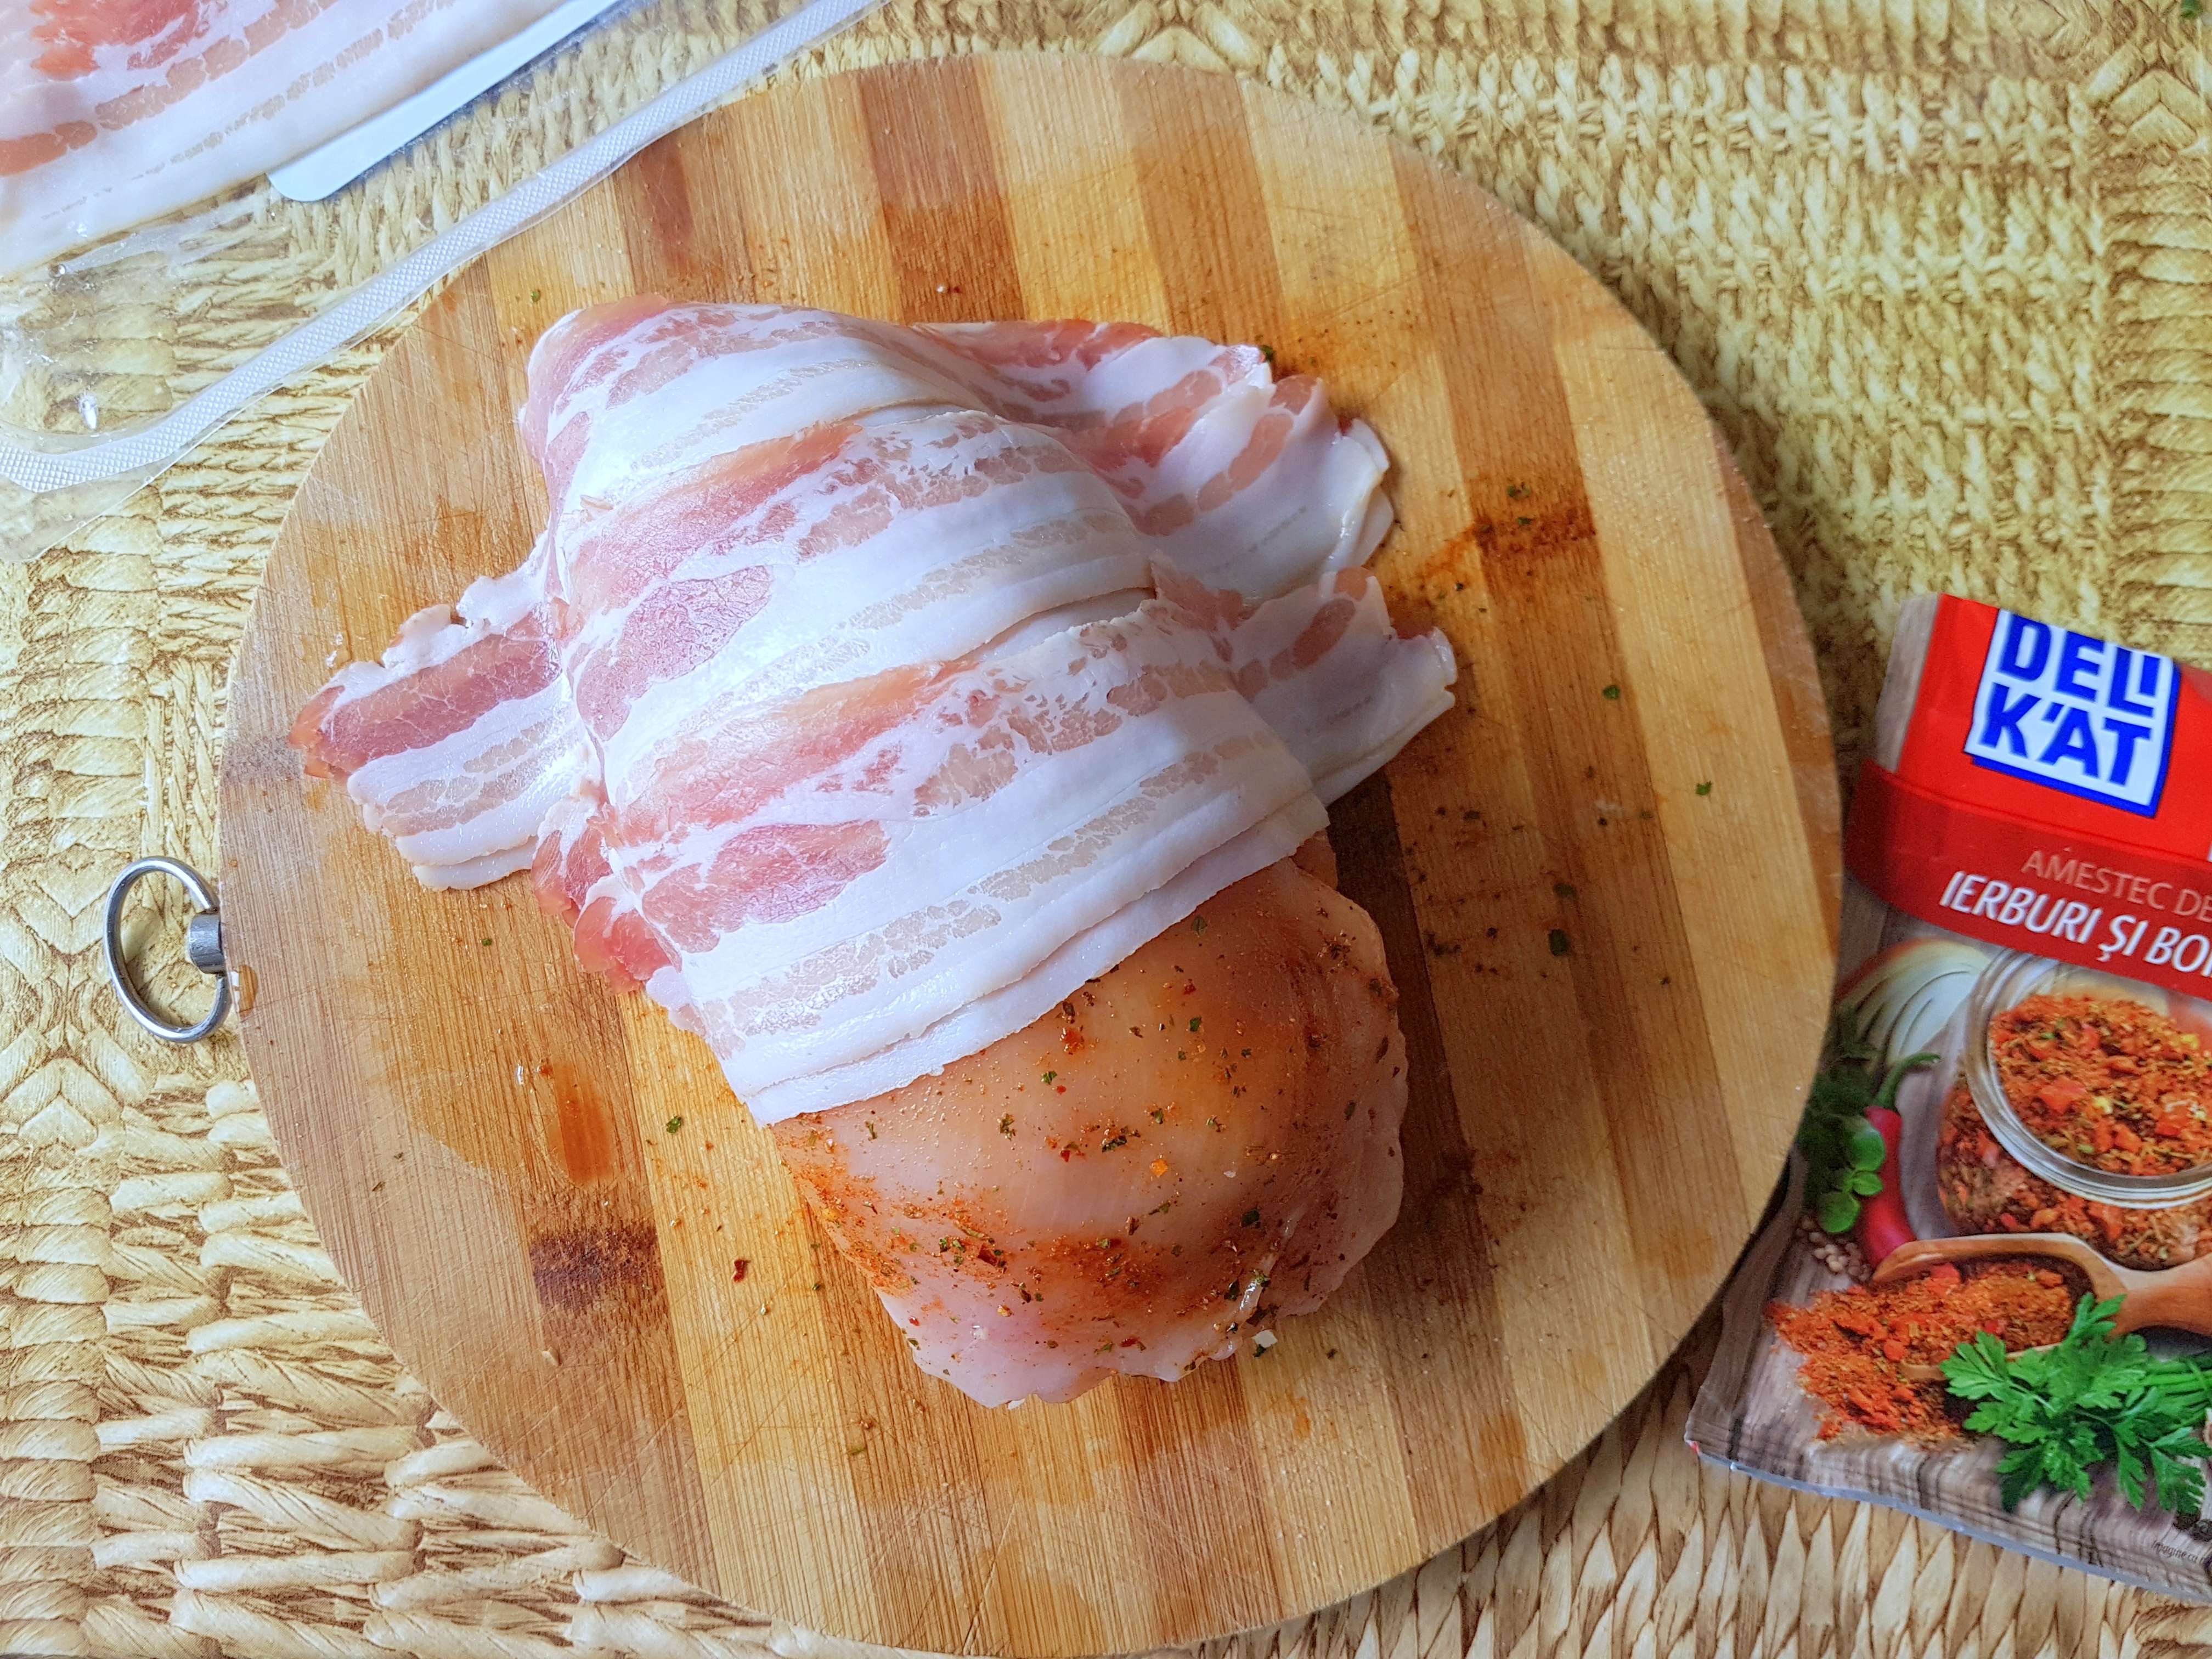 Rulada din carne de pui umpluta cu fasole verde, nuci si cascaval invelita in bacon